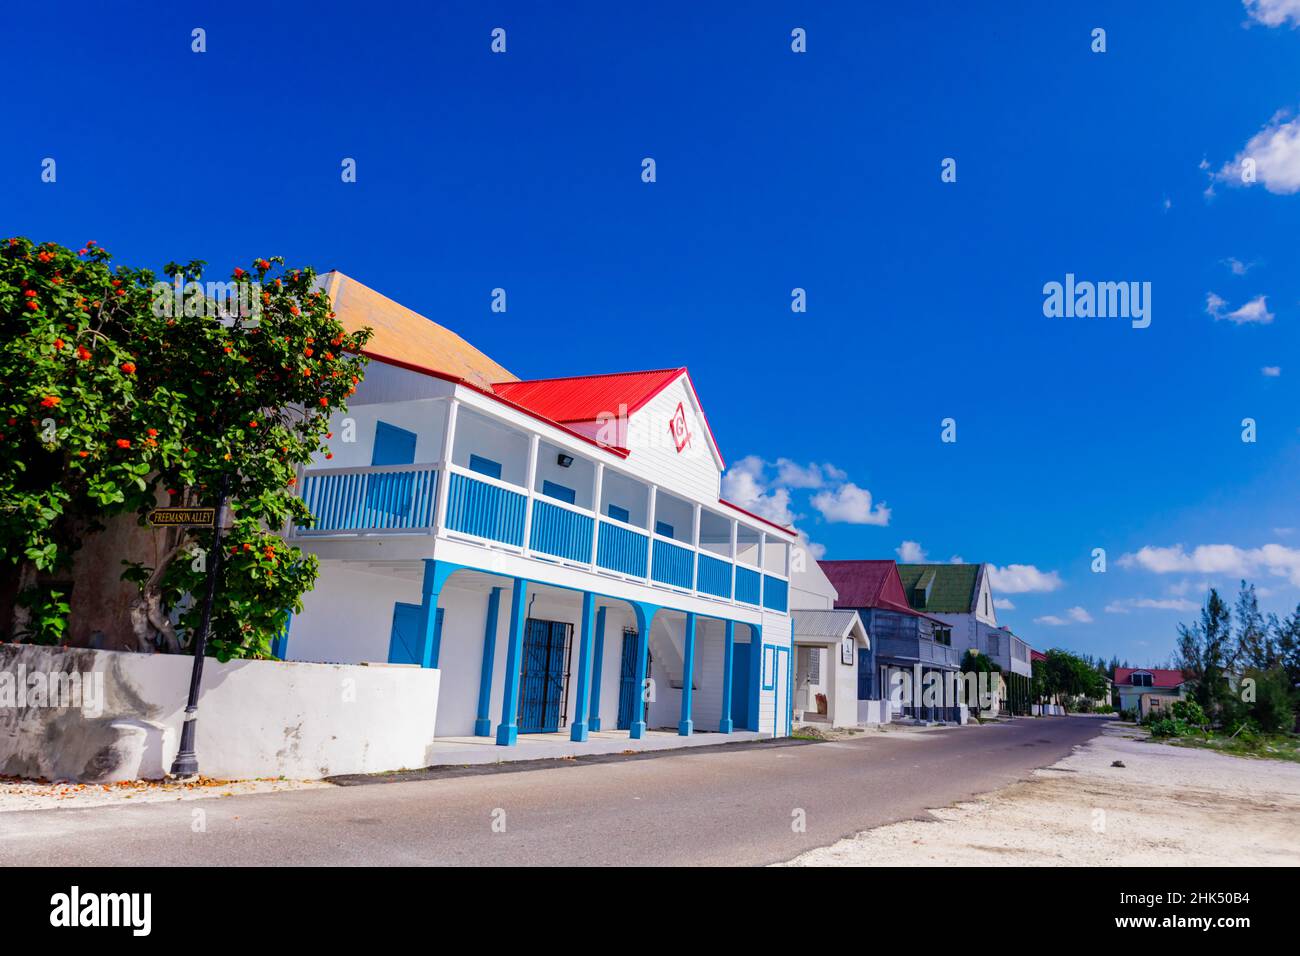 Old Masonic Lodge, l'un des bâtiments colorés de la ville de Cockburn, îles Turks et Caicos, Atlantique, Amérique centrale Banque D'Images